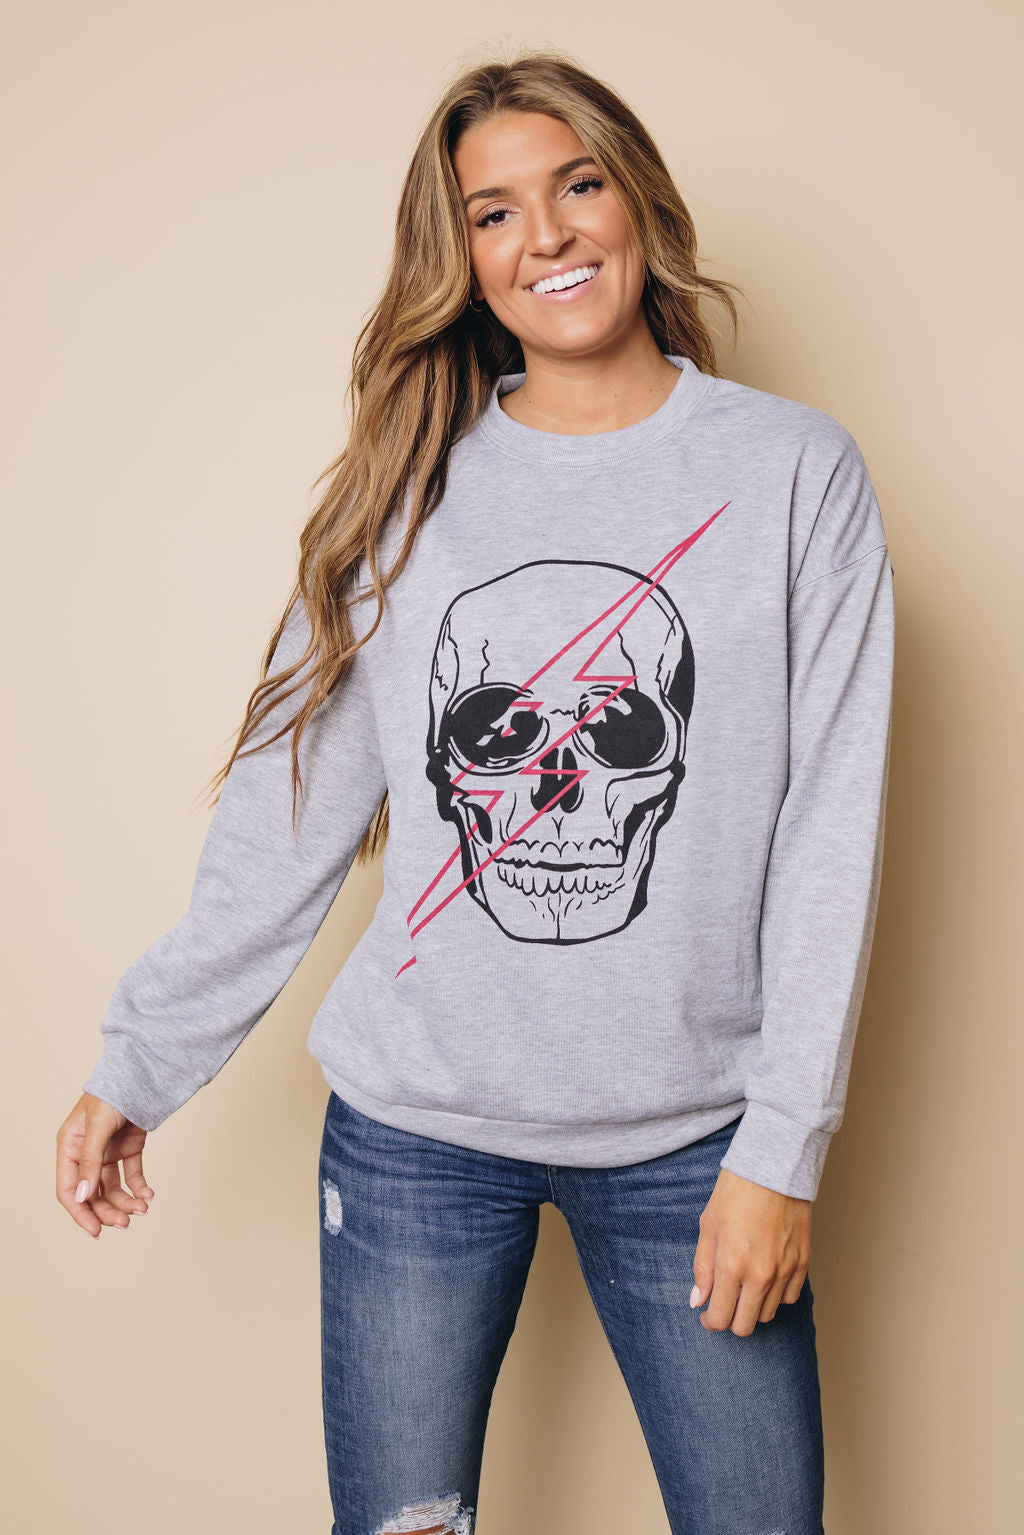 Womens Skull Graphic Sweatshirt